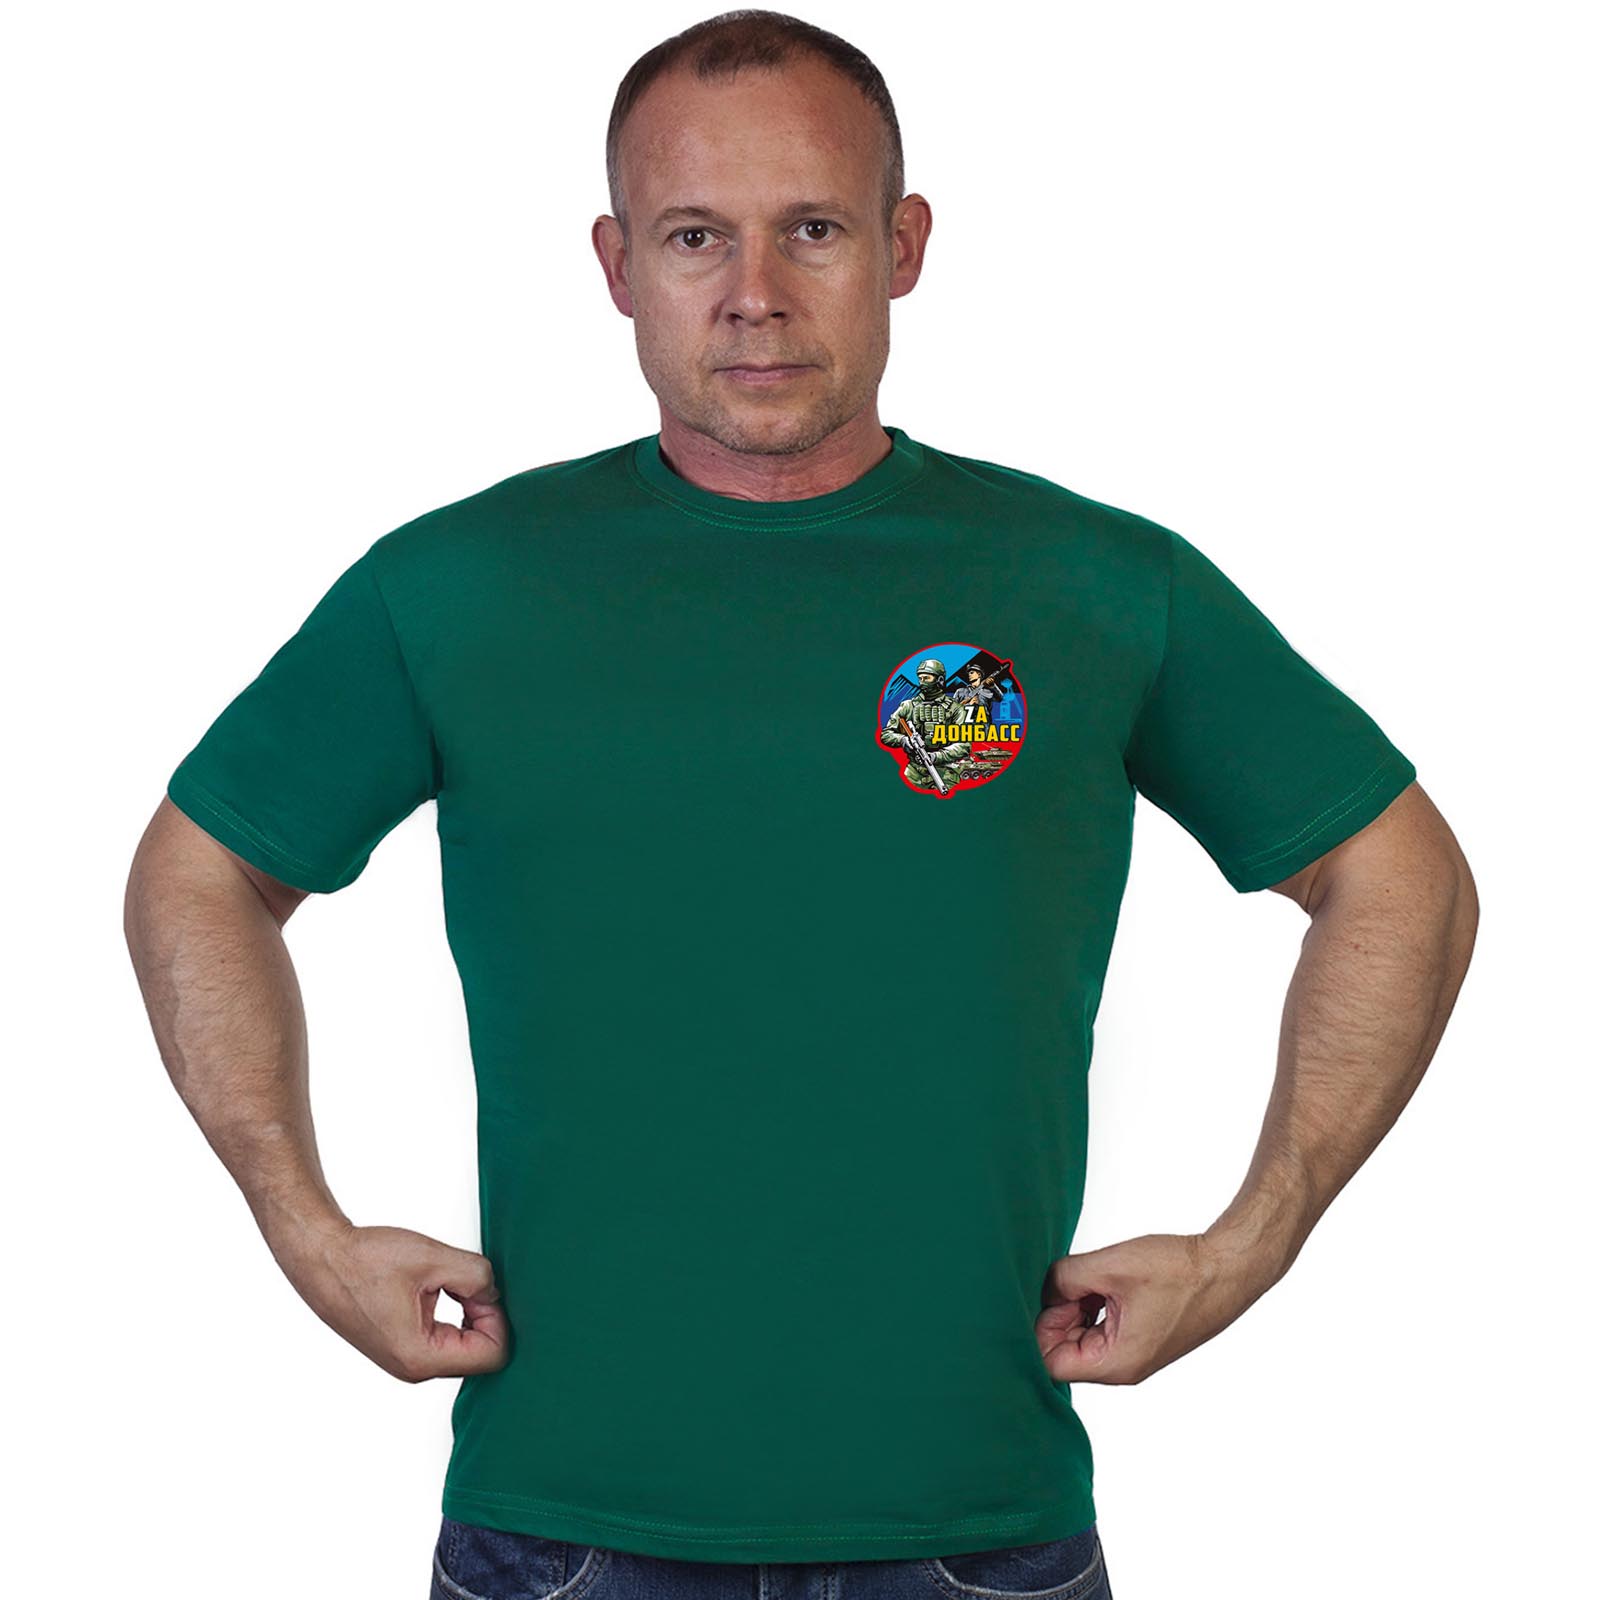 Зелёная футболка с термотрансфером "Zа Донбасс"